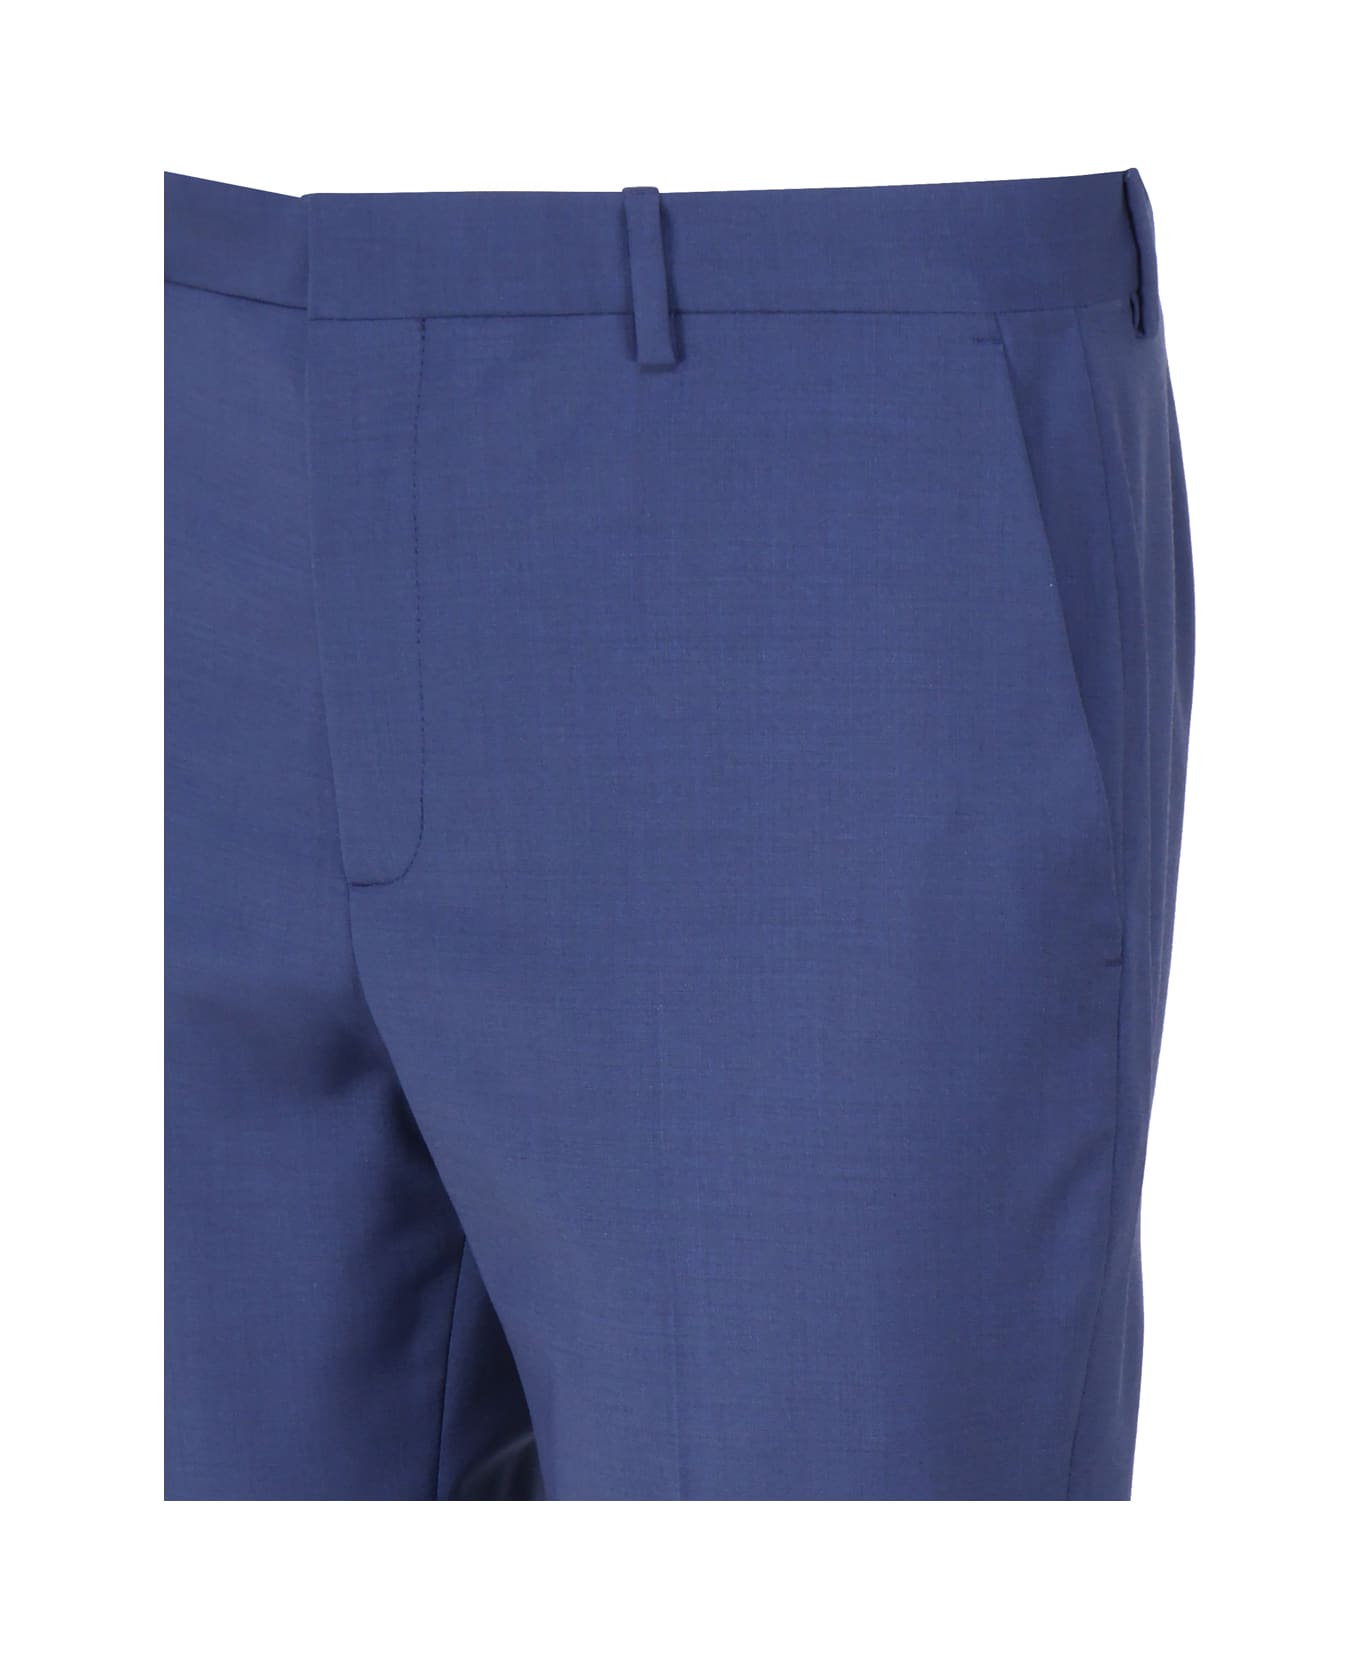 Calvin Klein Elegant Wool Blended Trousers - Slate blue ボトムス